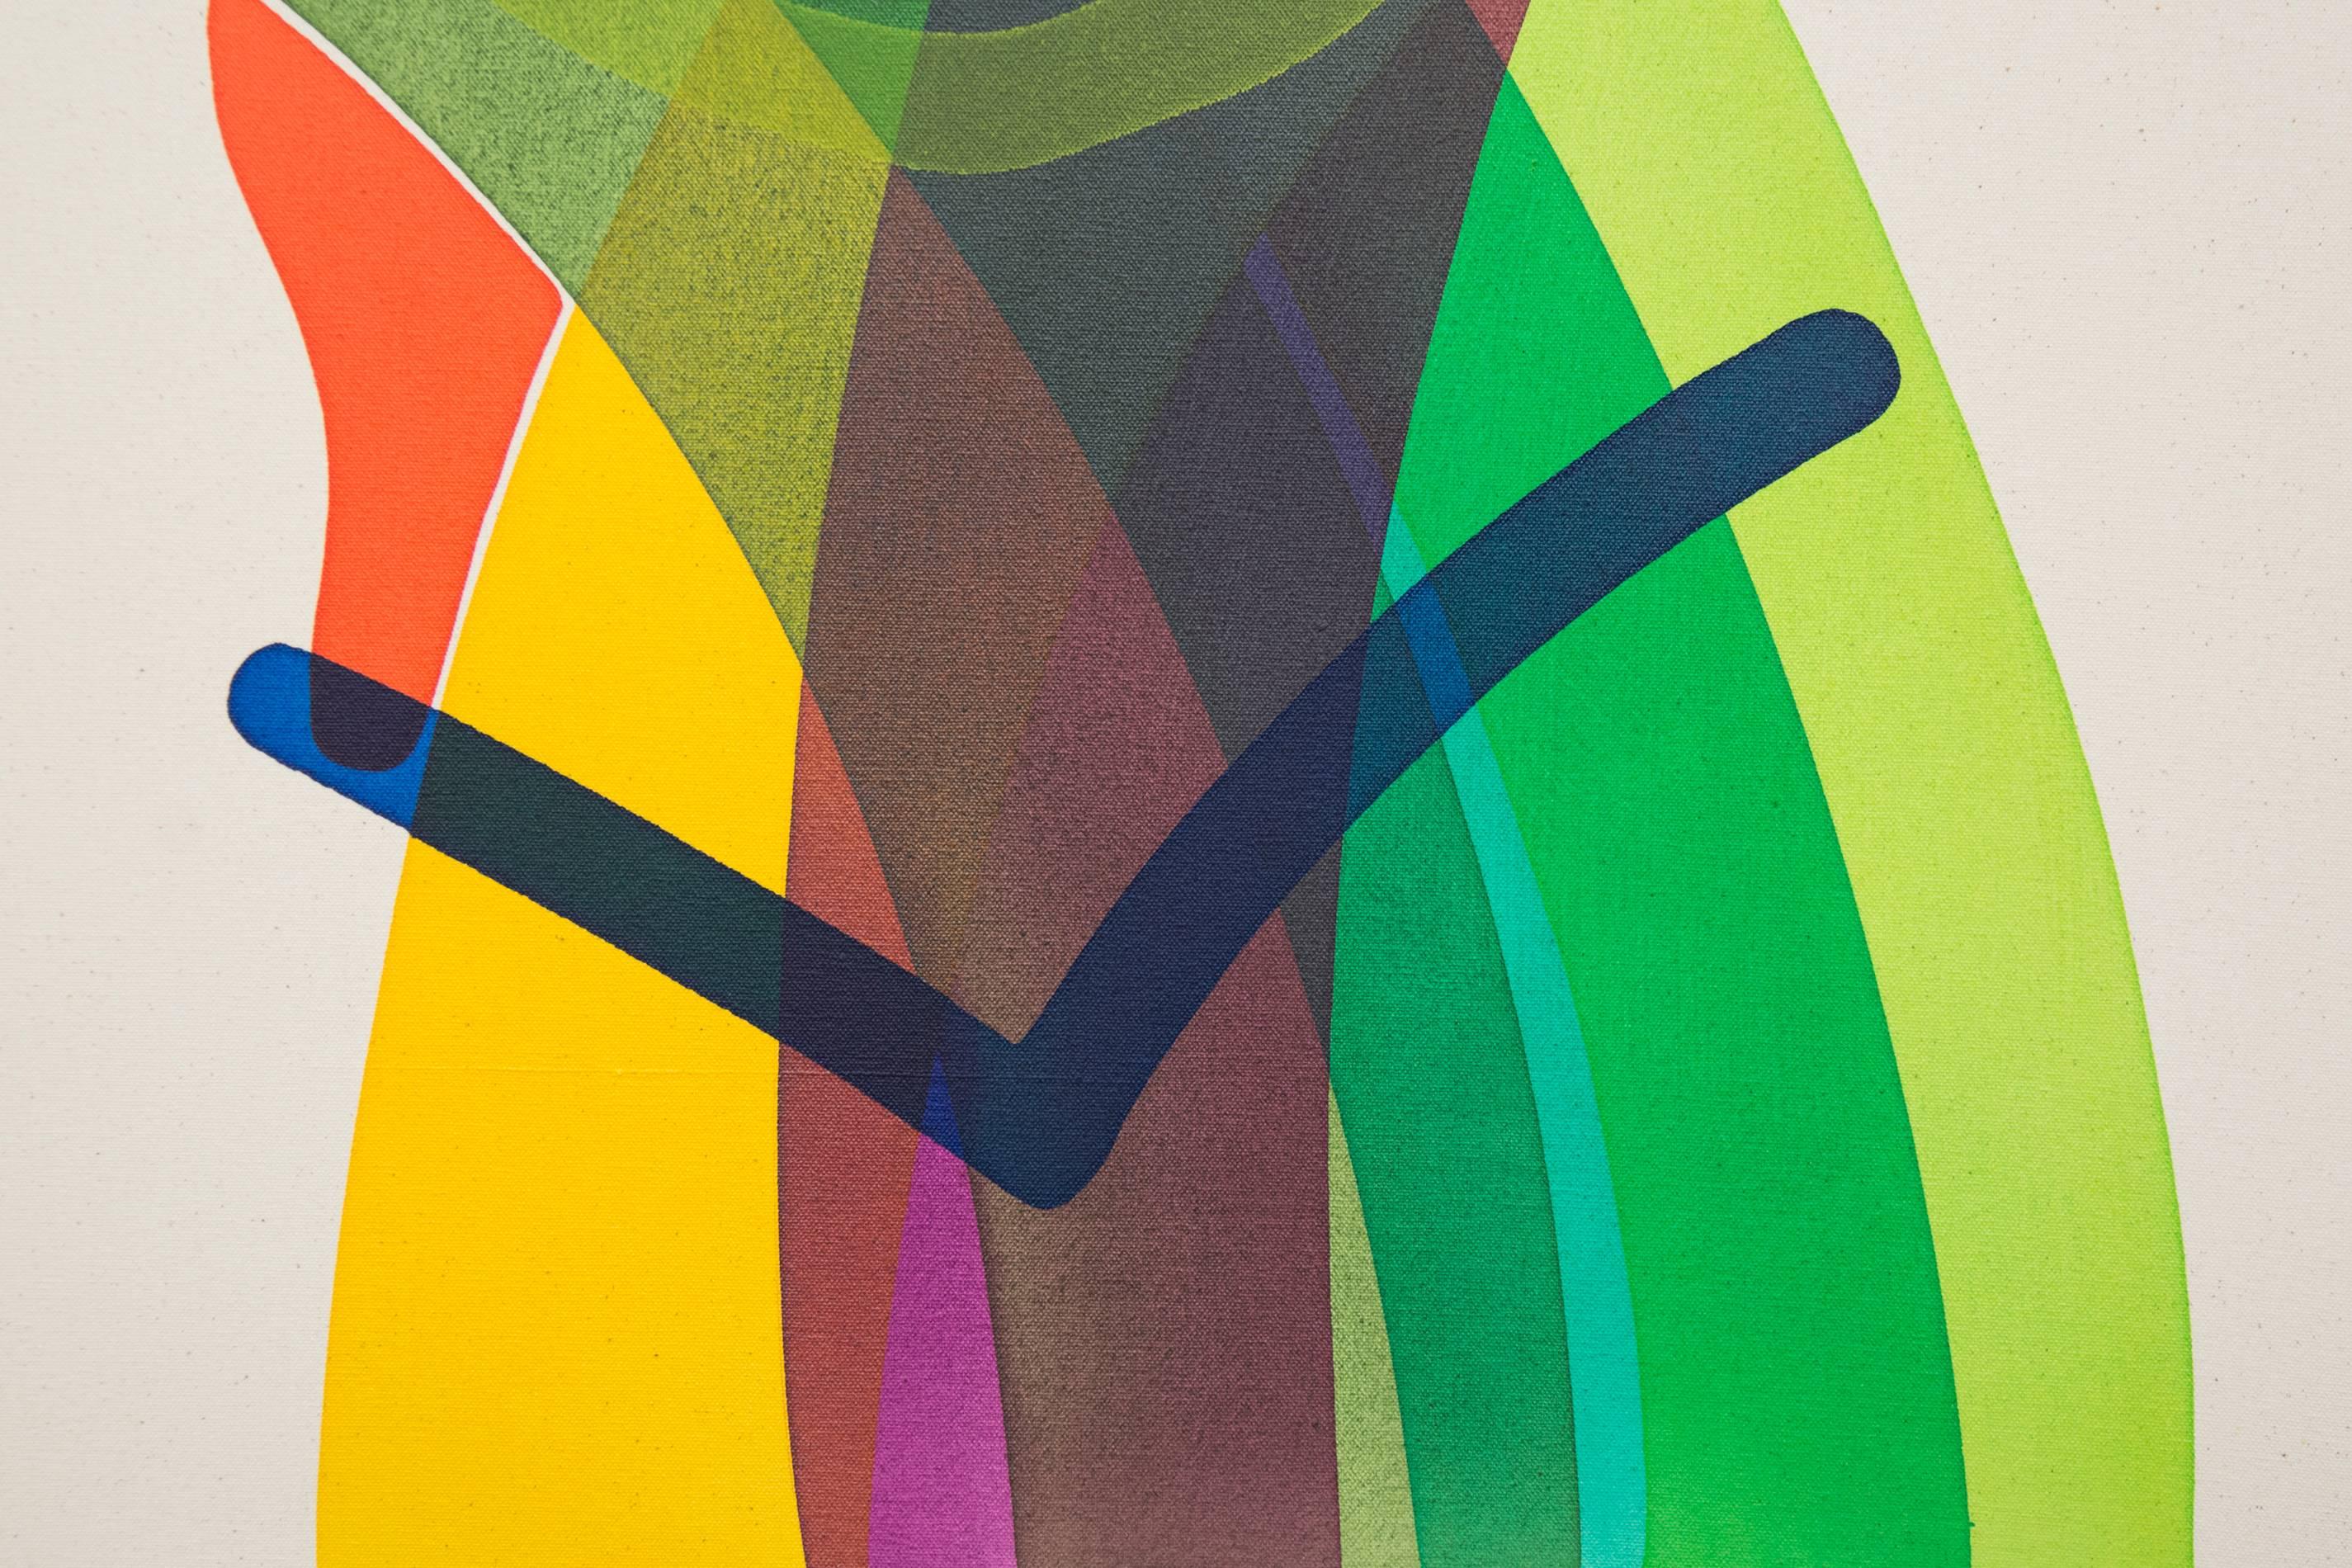 Tête avec ligne bleue n° 3 - formes abstraites et colorées entrecroisées sur toile - Contemporain Painting par Aron Hill